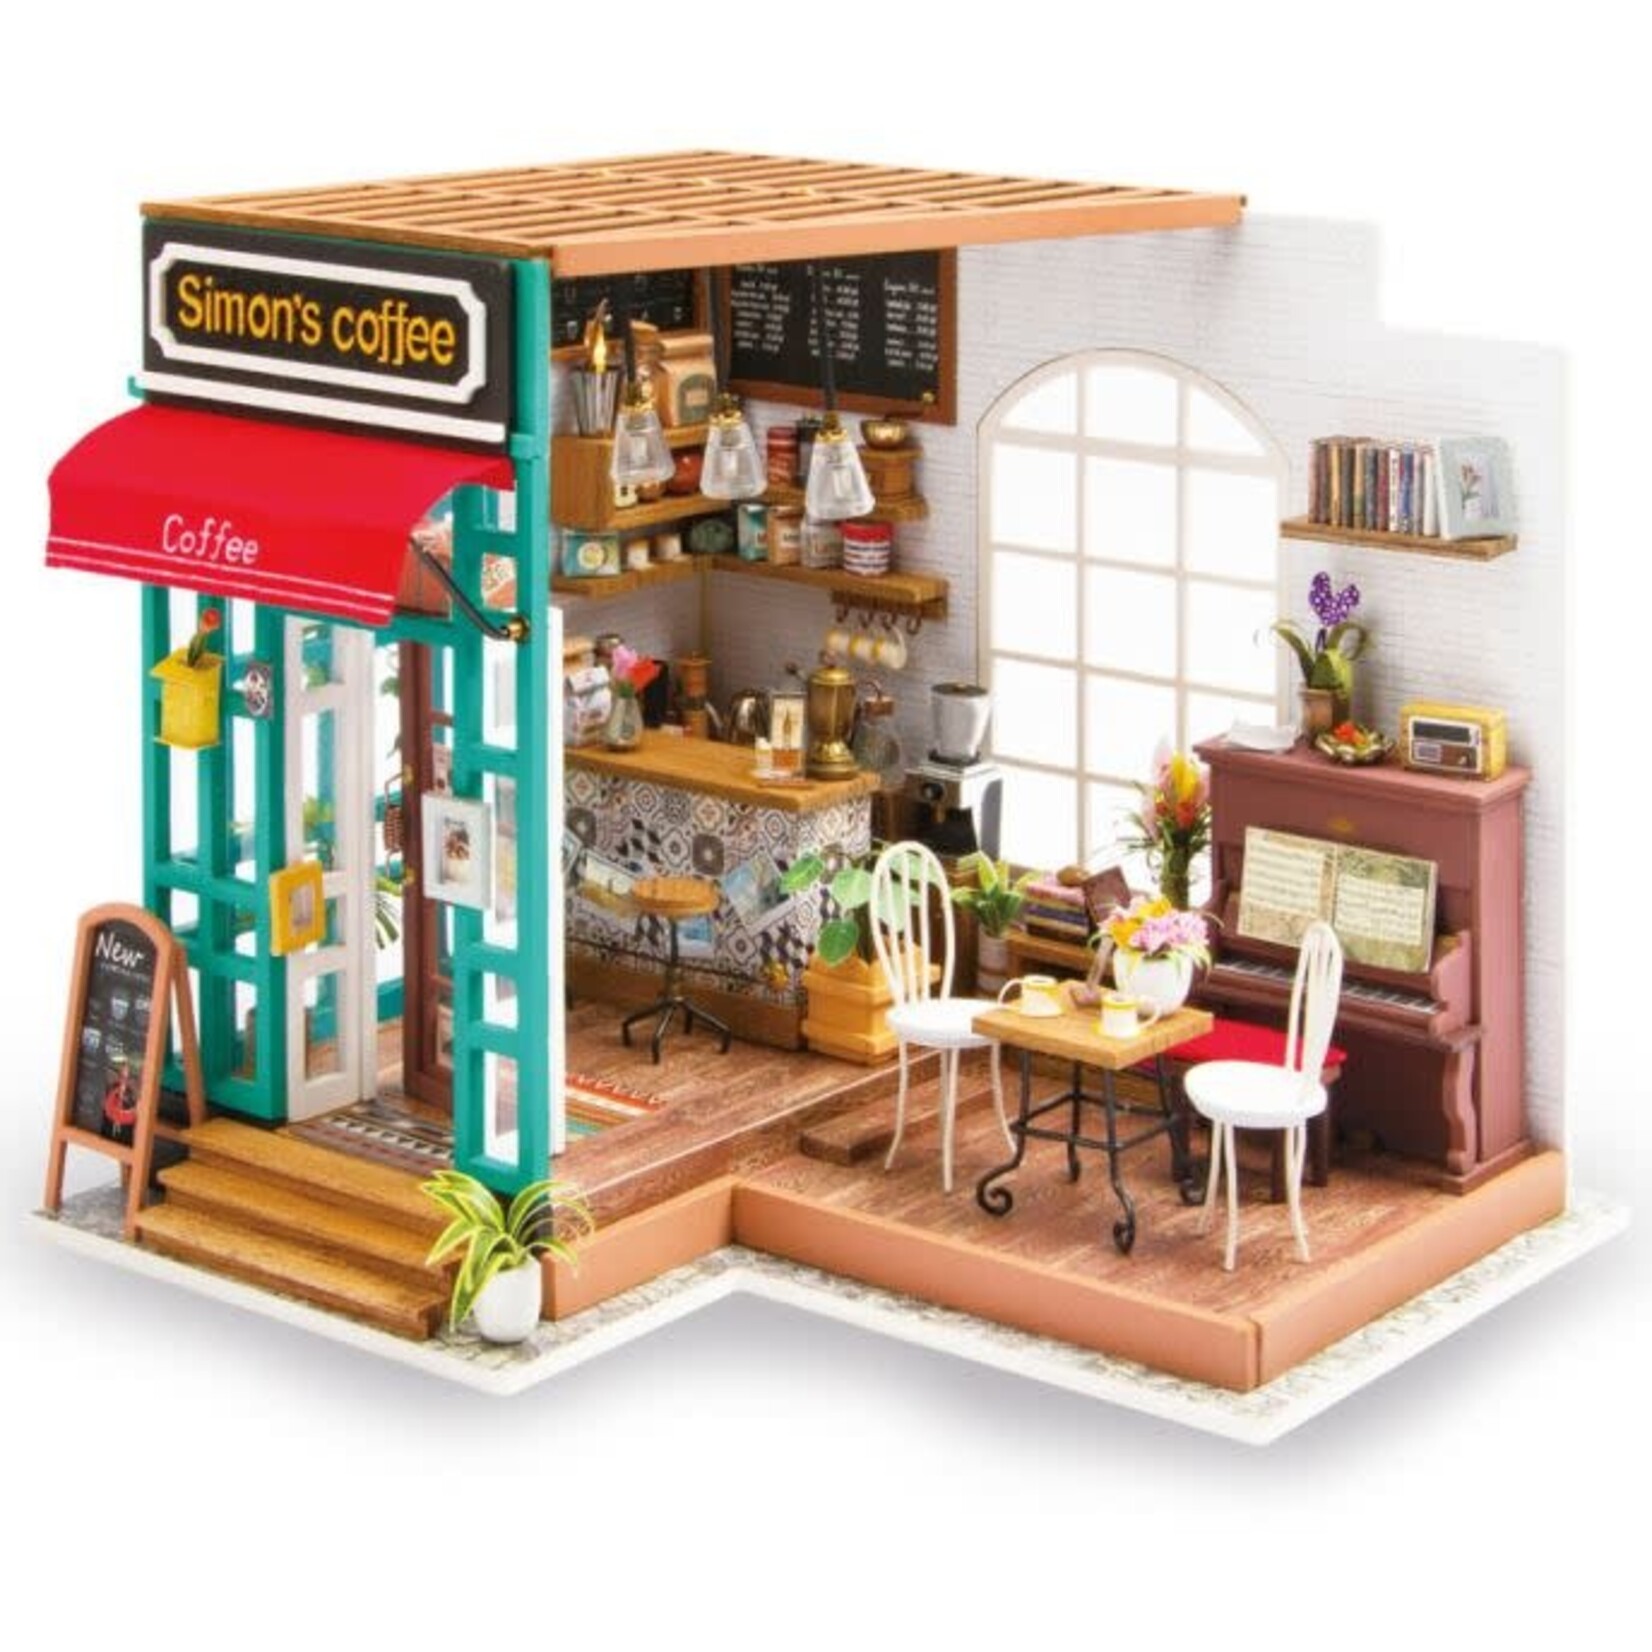 Robotime Miniature House Kit: Simon's Coffee